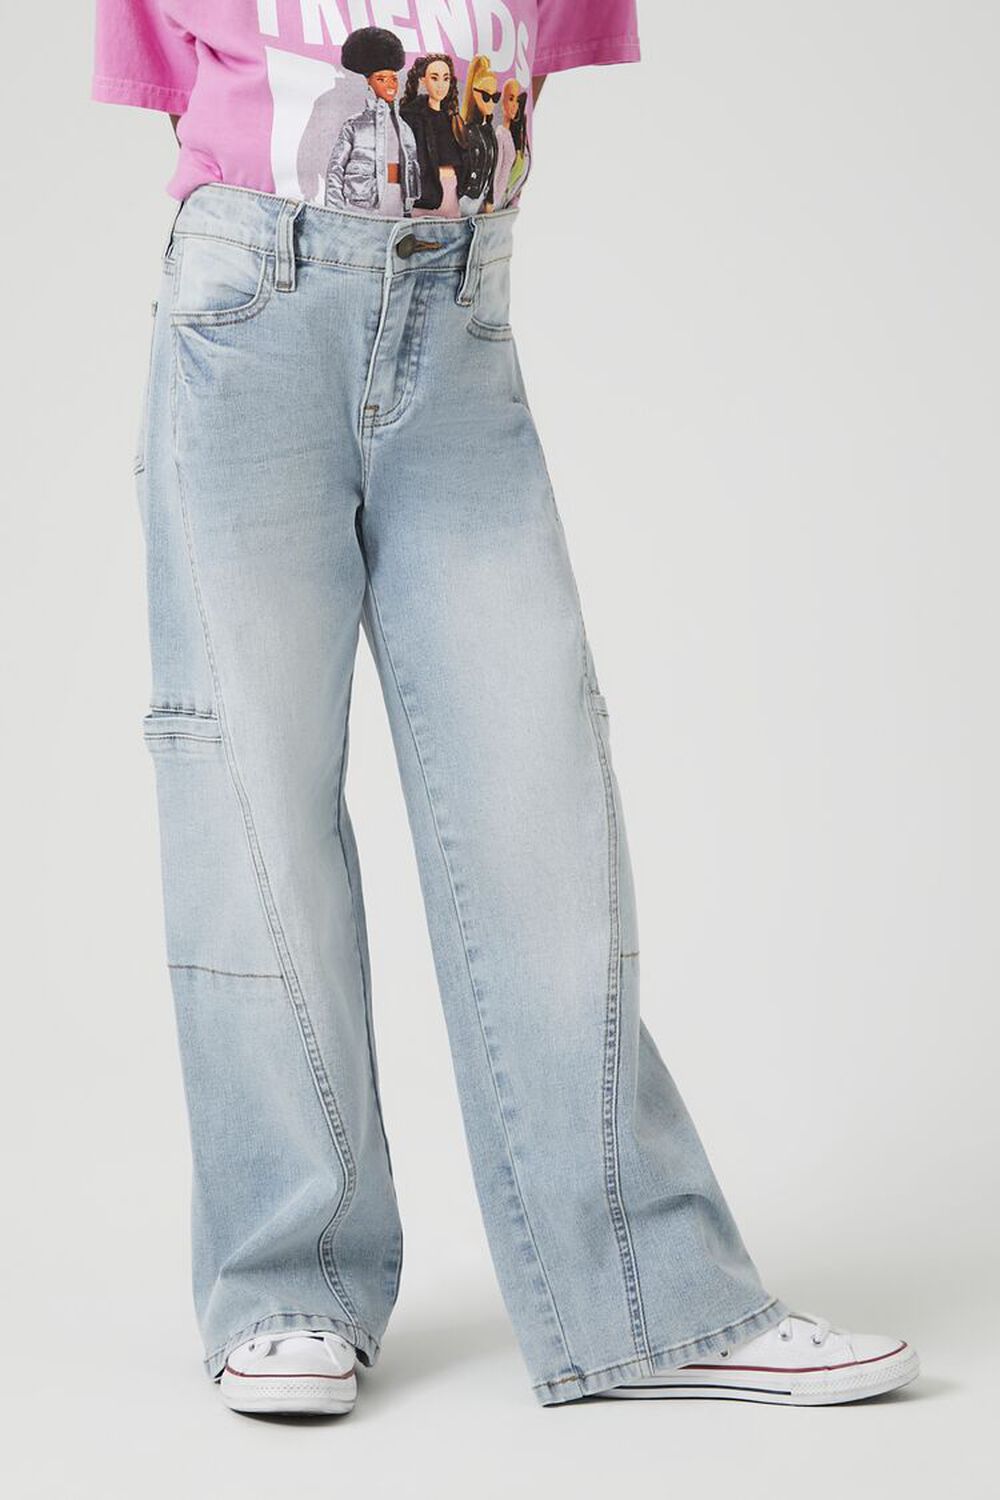 Buy Girls' Jeans Wide Childrenswear Online